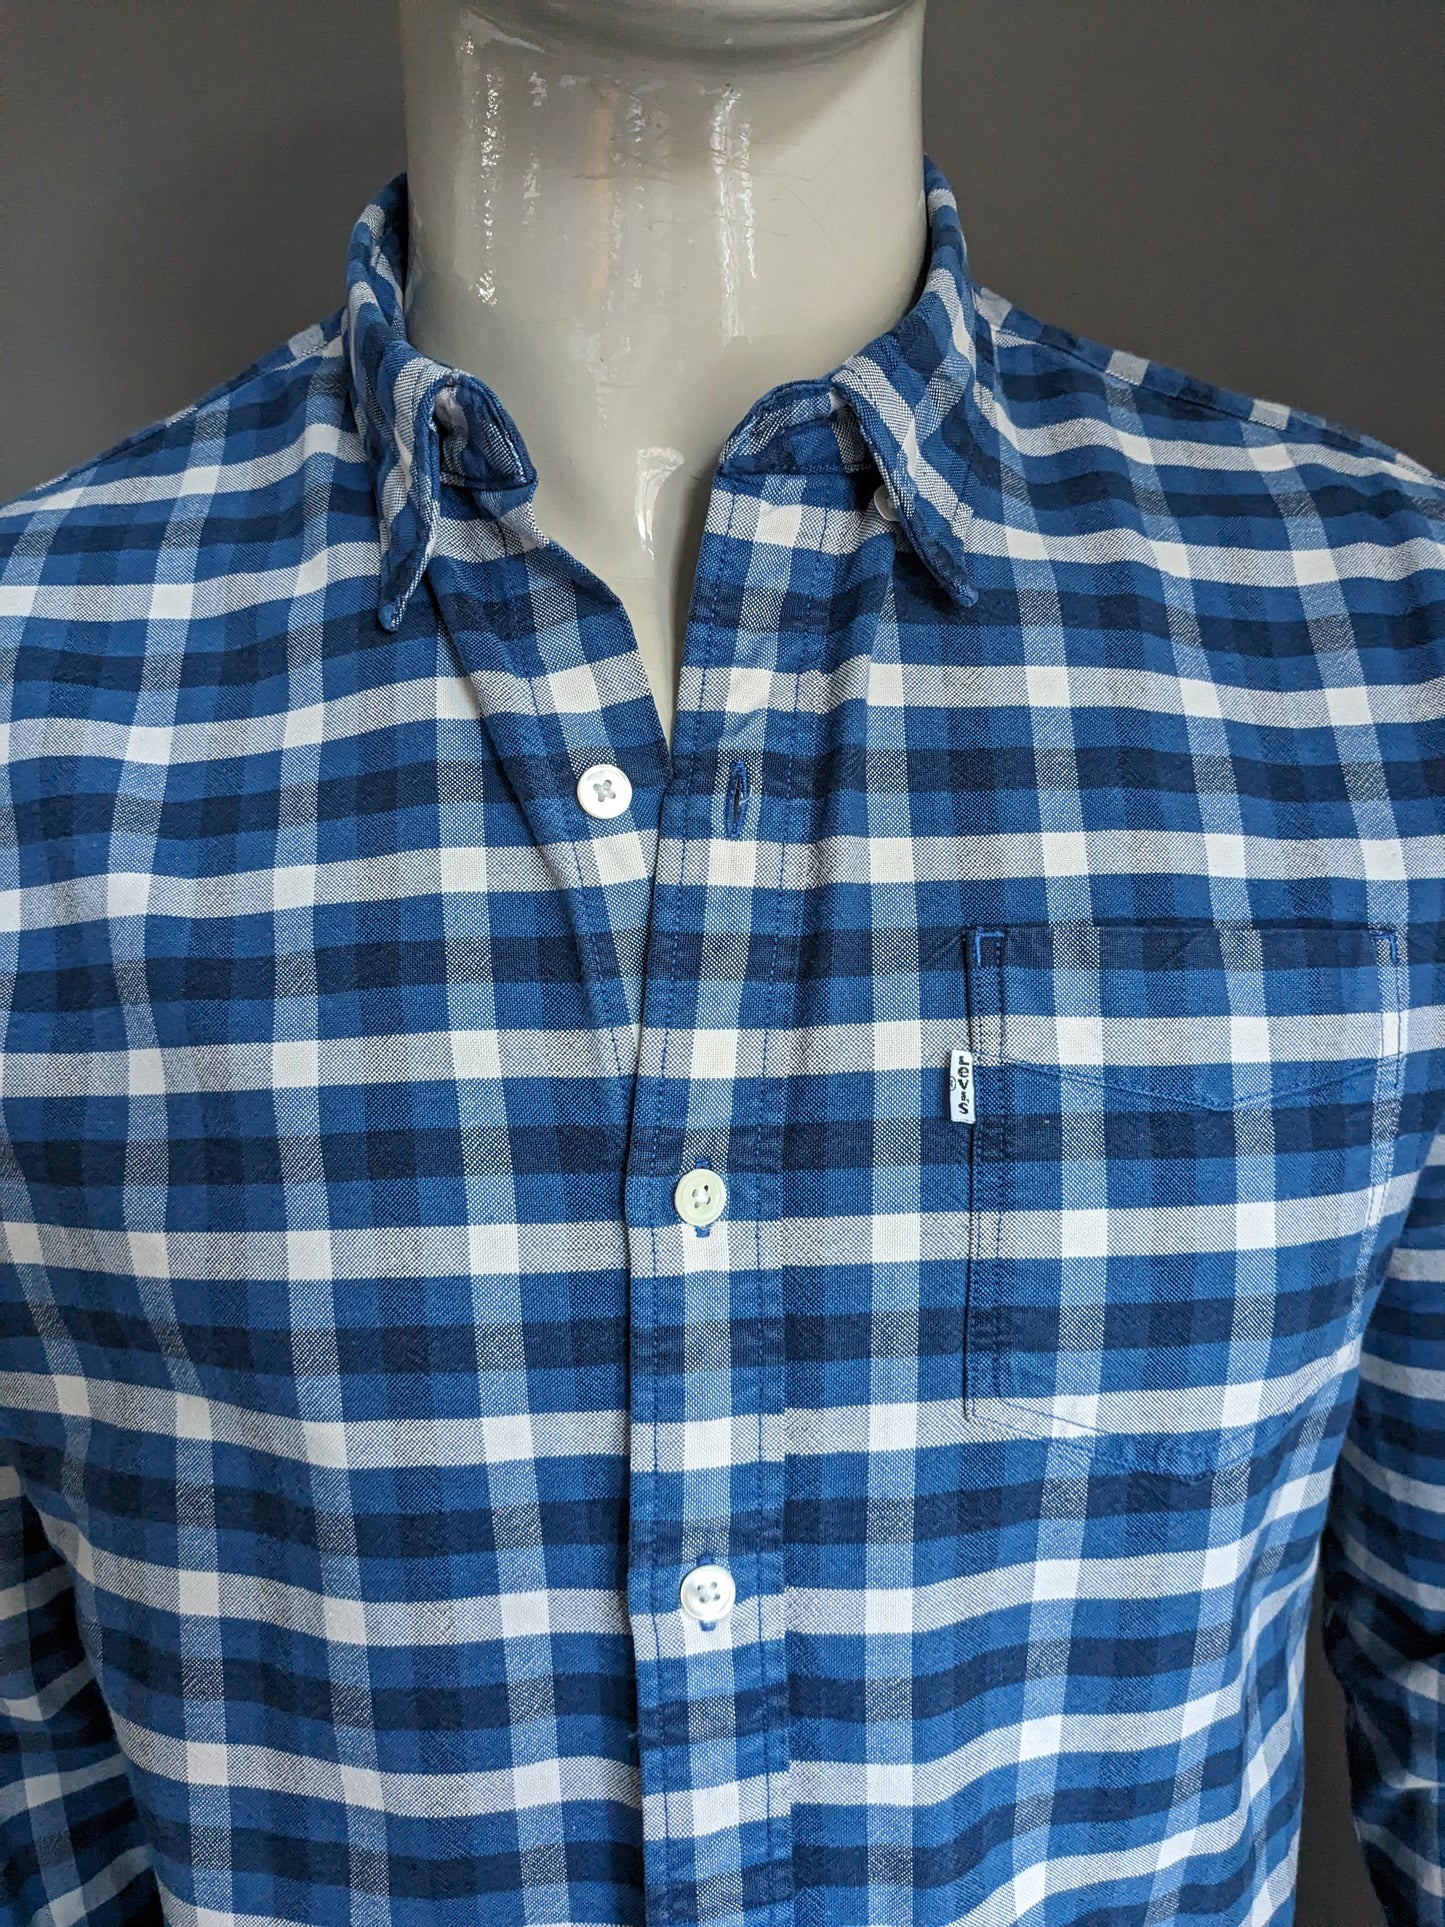 Shirt de flanelle de Levi. Blue blanc à carreaux. Taille L.